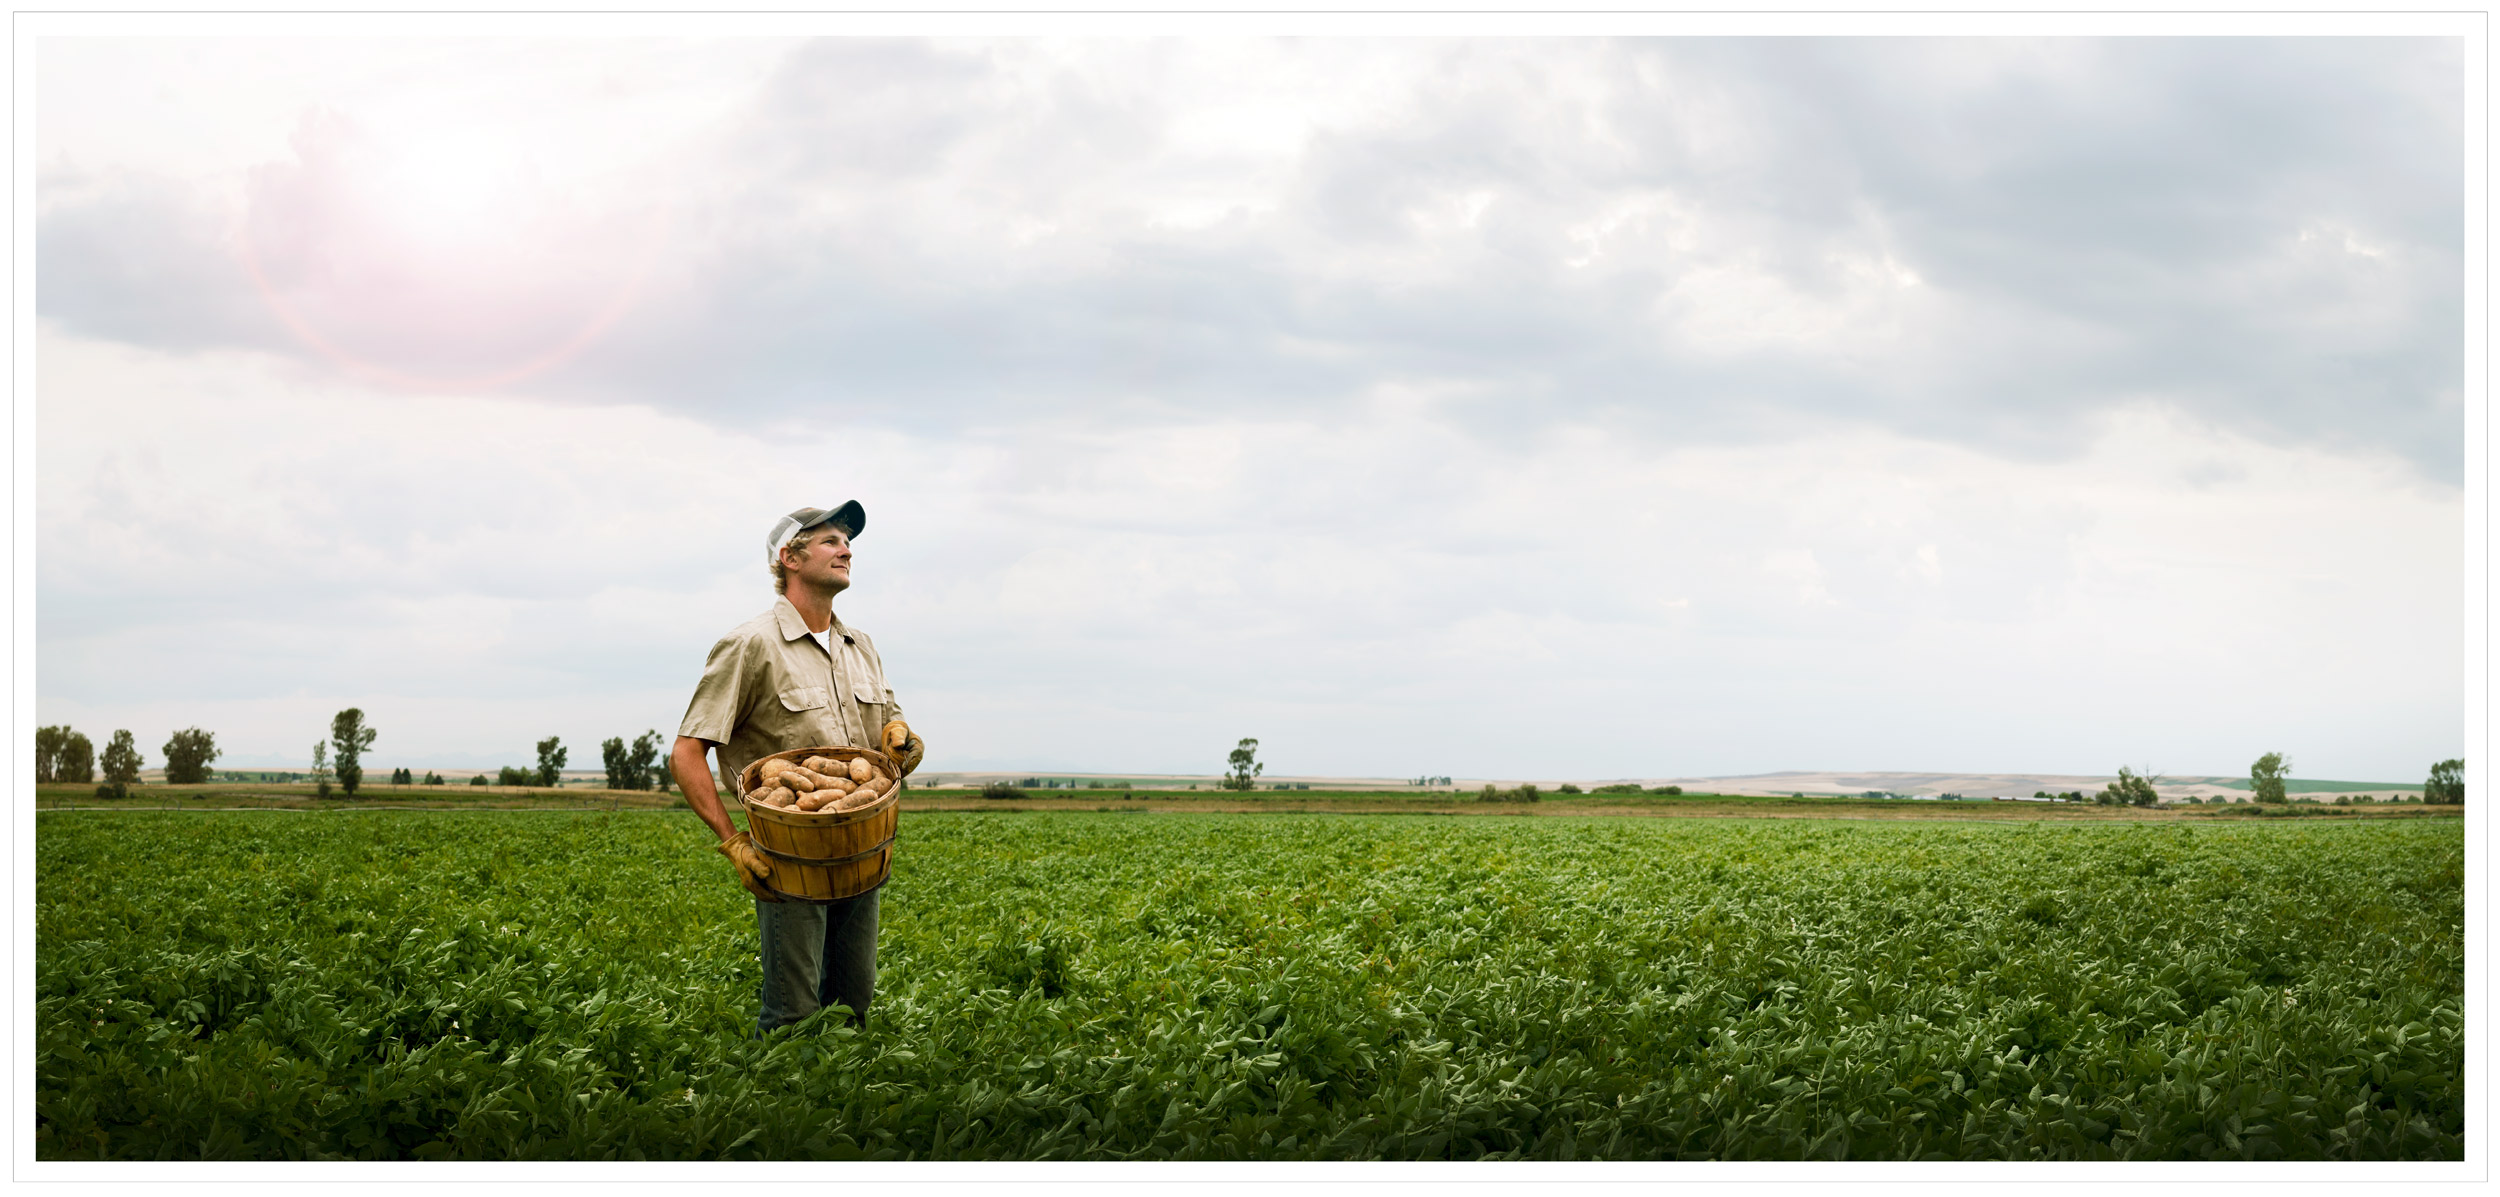 Potato farmer in a field - print campaign for BASF Germany